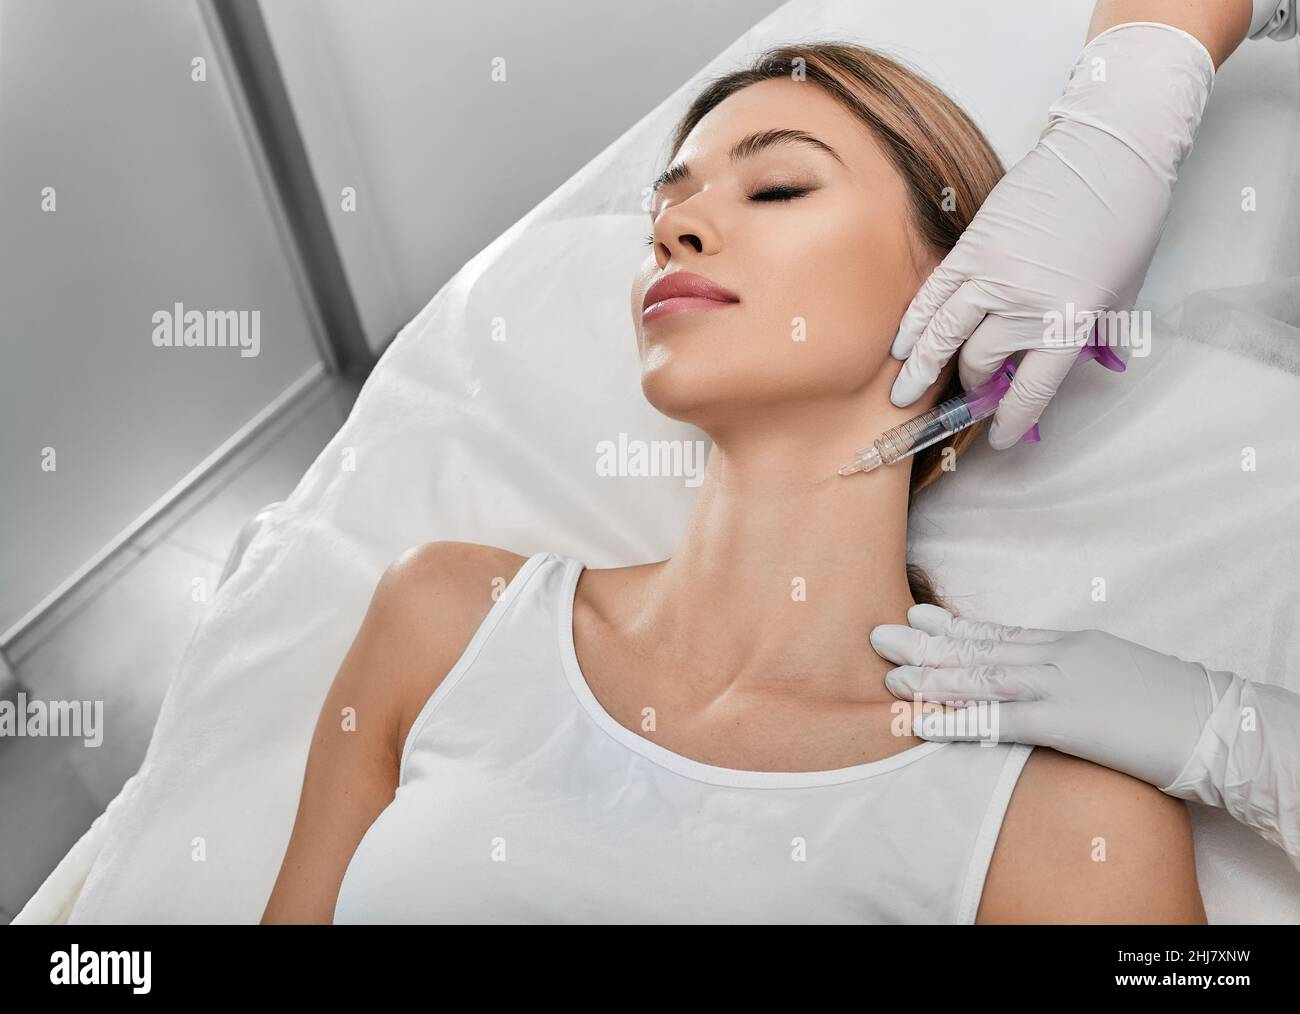 Lisciare la pelle del collo femminile con iniezioni nel collo presso la clinica cosmetica. Ringiovanimento e contornazione della pelle del collo, mesoterapia e biorevitalizzazione Foto Stock